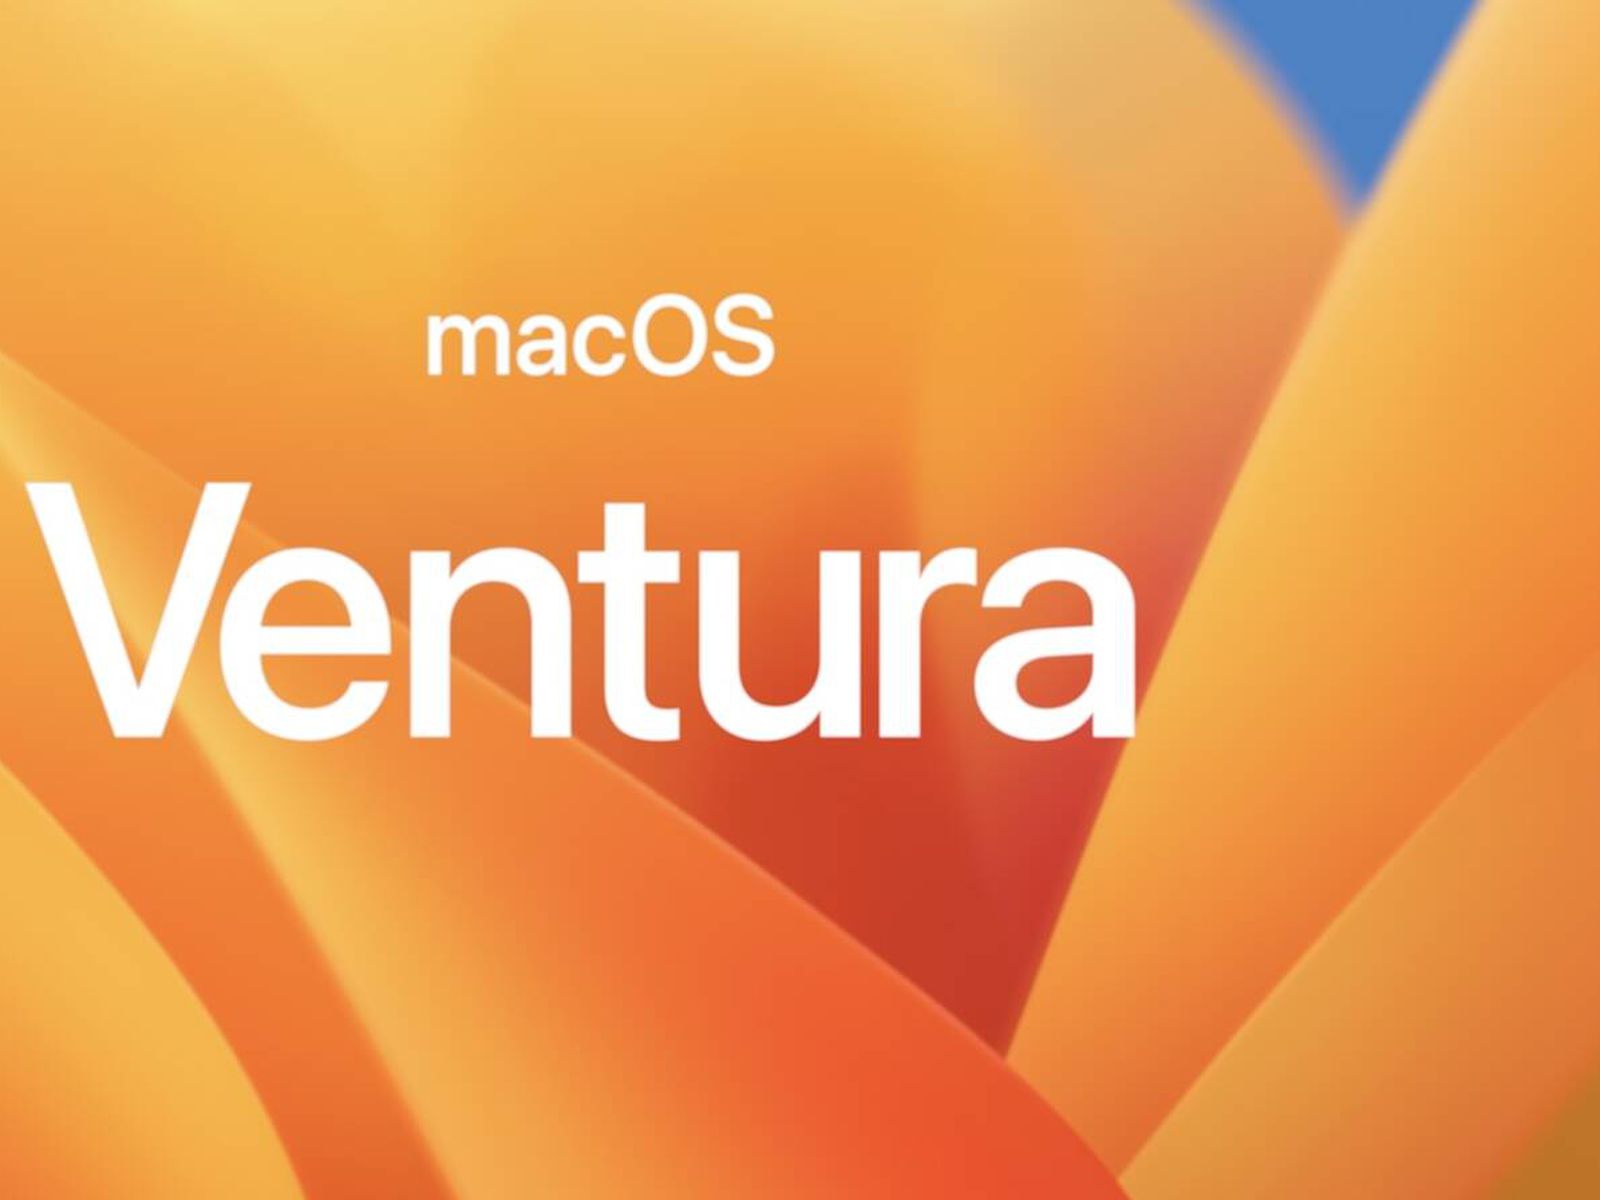 Phiên bản beta macOS 13 Ventura đã được ra mắt và chắc chắn sẽ mang đến cho người dùng nhiều tính năng mới tuyệt vời. Với những hình nền tuyệt đẹp, bạn sẽ được tận hưởng một giao diện thật tuyệt vời trên thiết bị của mình. Hãy trải nghiệm phiên bản mới này và khám phá những tính năng đầy thú vị.